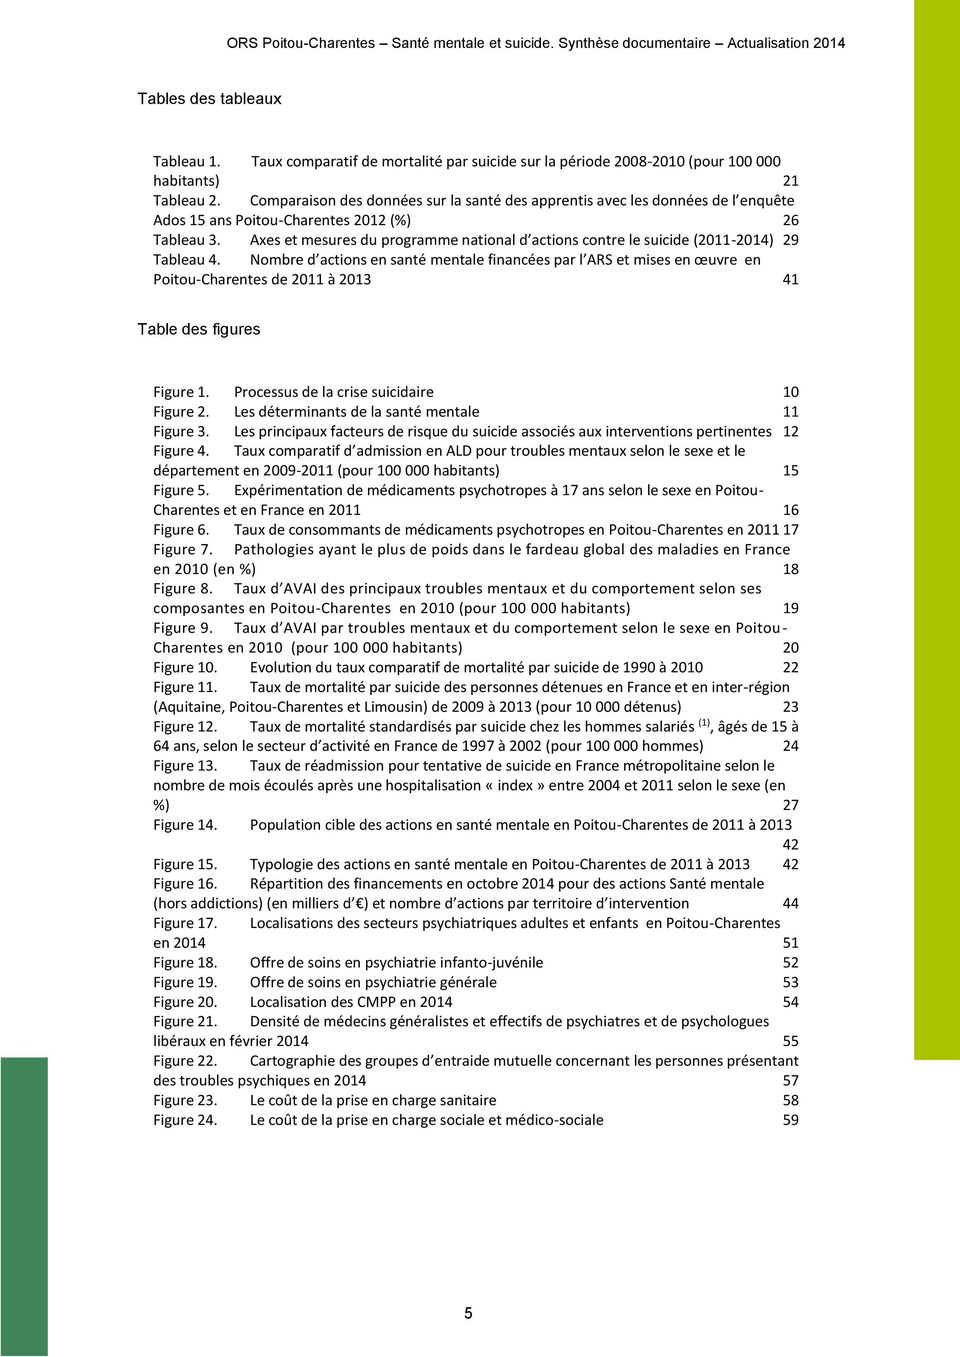 Axes et mesures du programme national d actions contre le suicide (2011-2014) 29 Tableau 4.